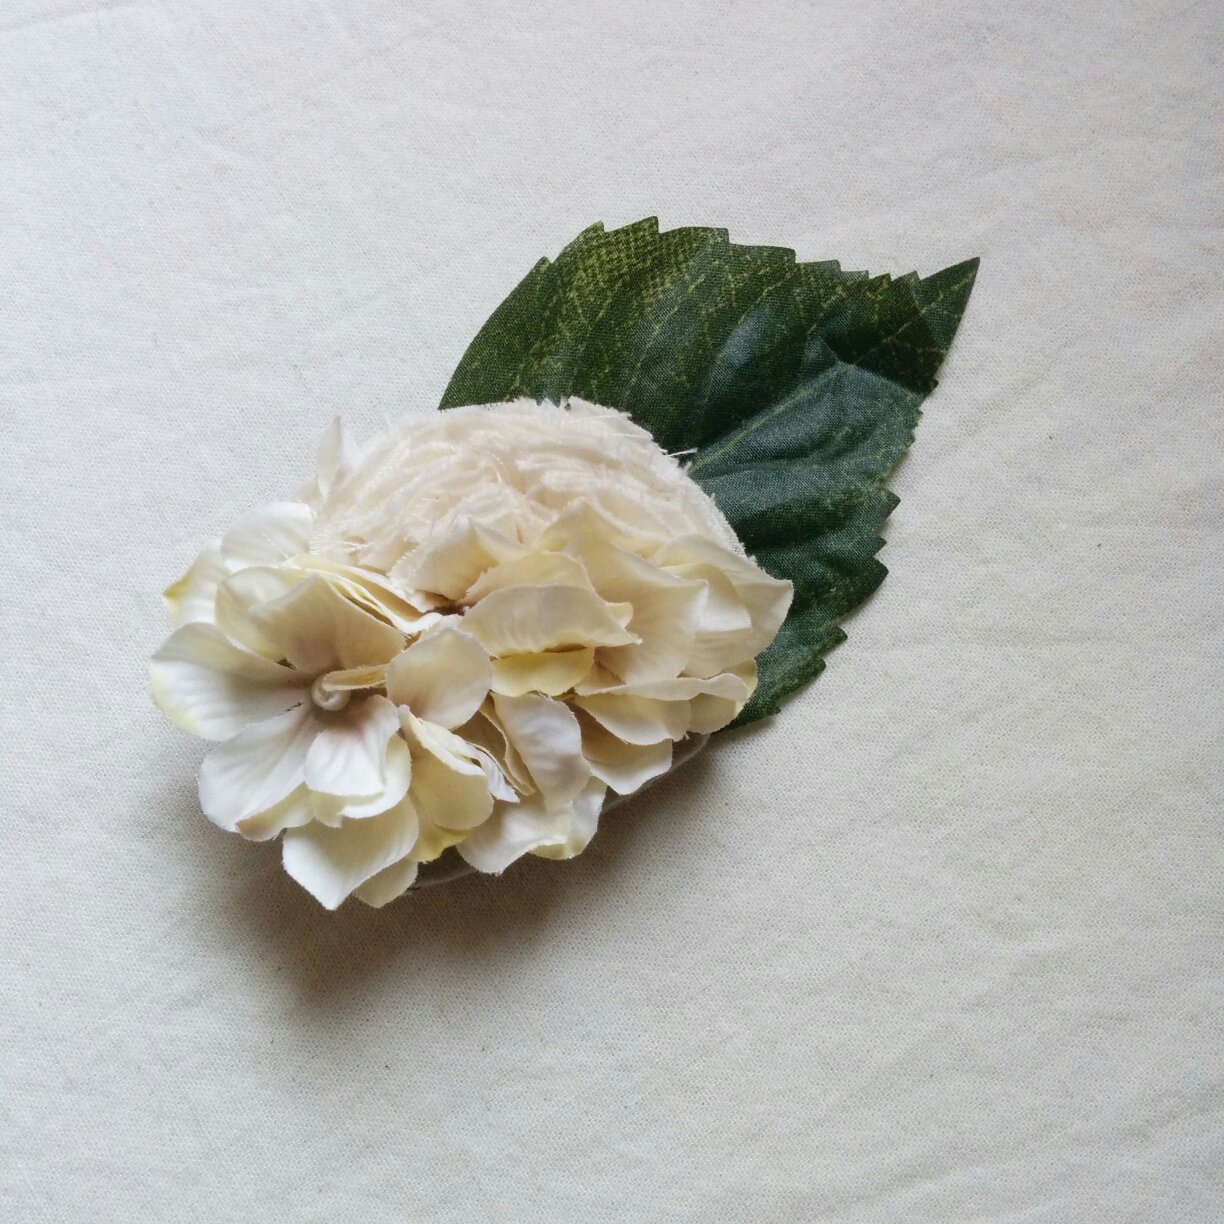 作り方 100均の造花で ナチュラルなコサージュ ハンドメイド洋裁ブログ Yanのてづくり手帖 簡単大人服 子供服 小物の無料型紙と作り方